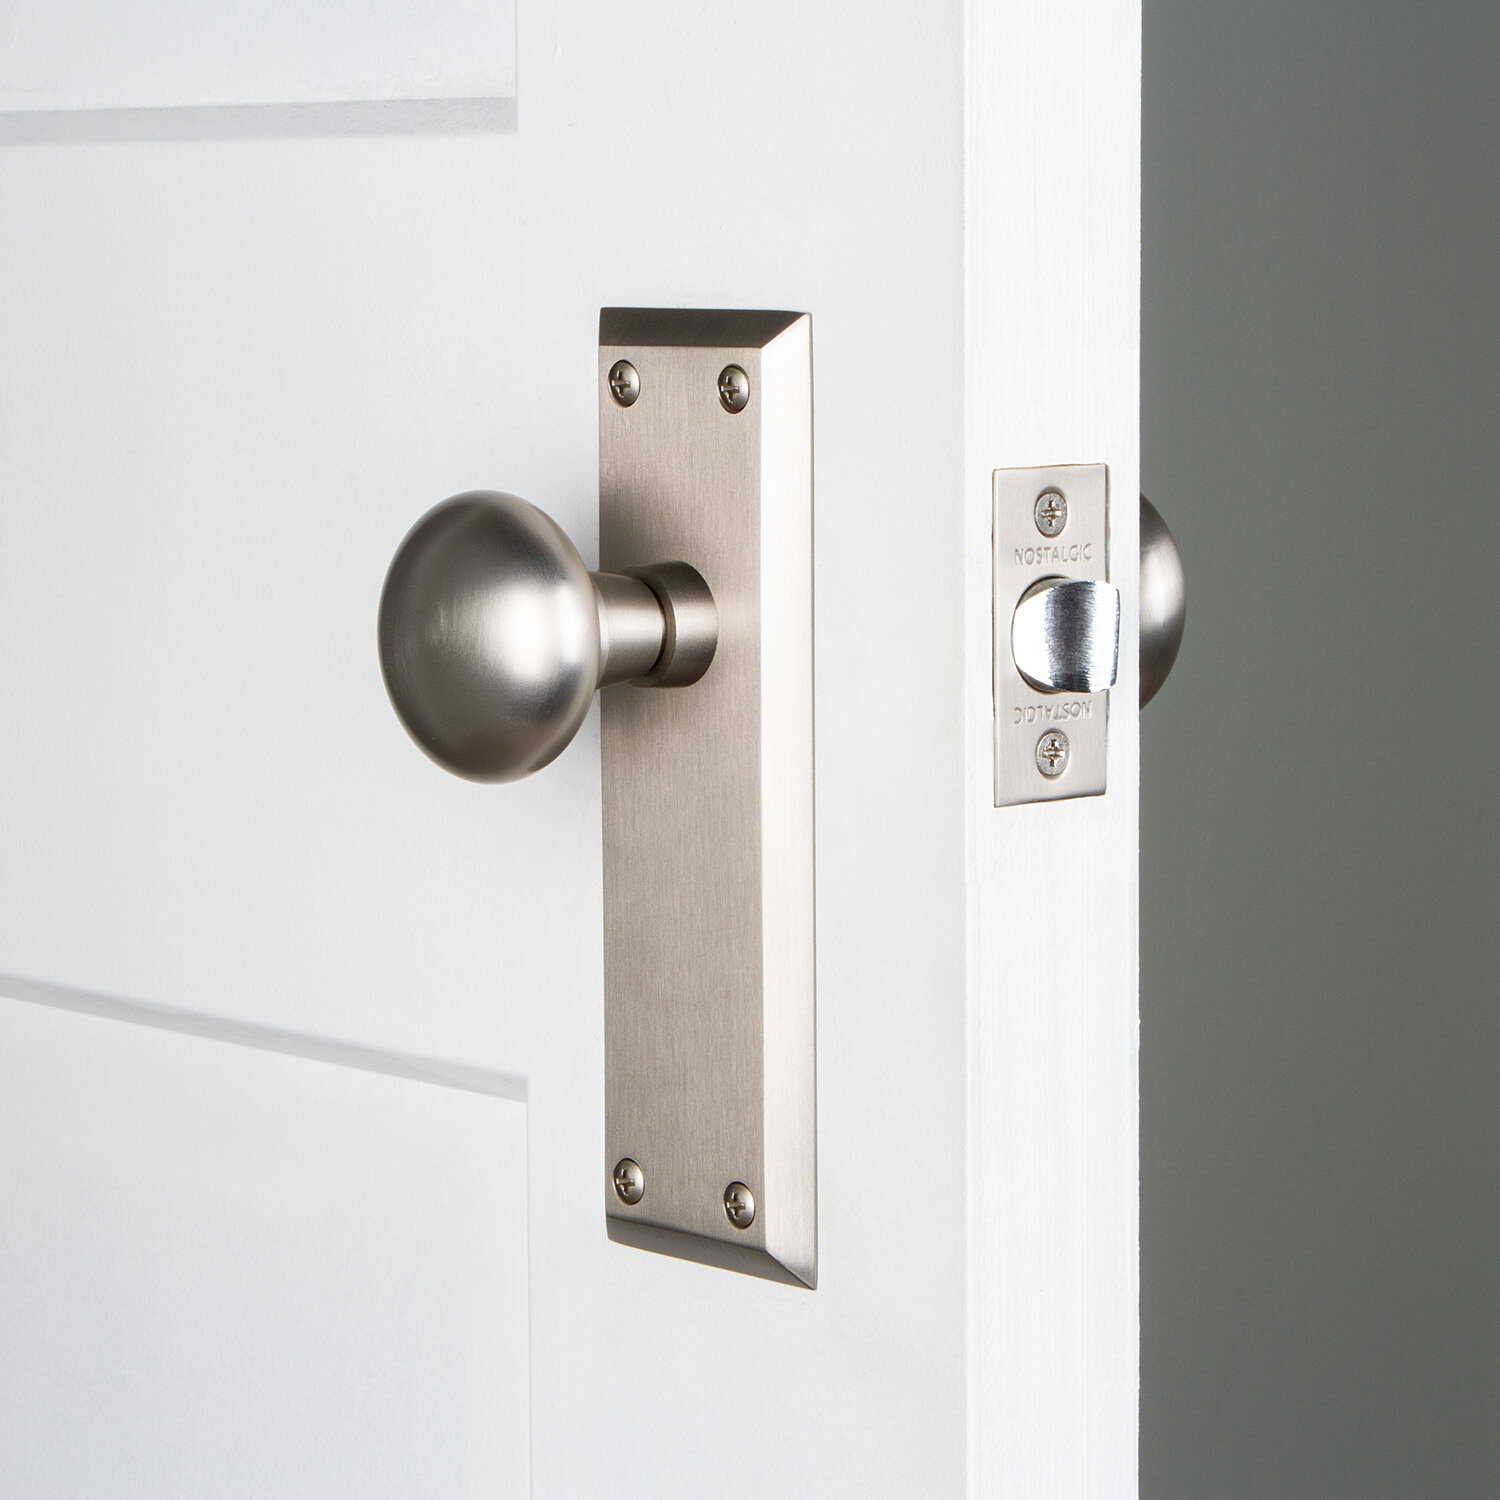 passage door lock knob interior stainless steel door knob new